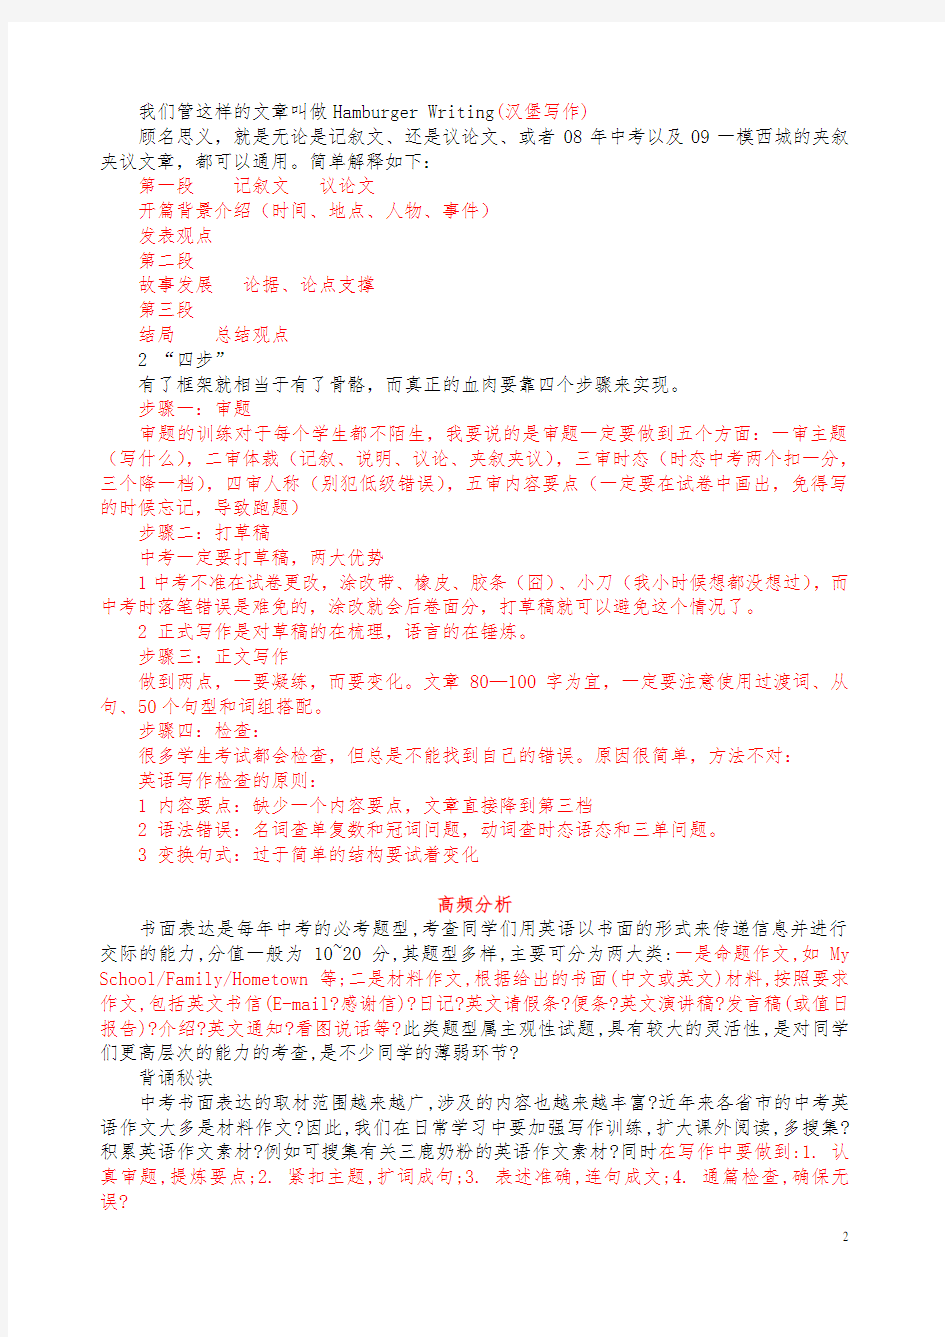 【中考】2019年惠州市中考英语作文万能写作模板【高分必备】